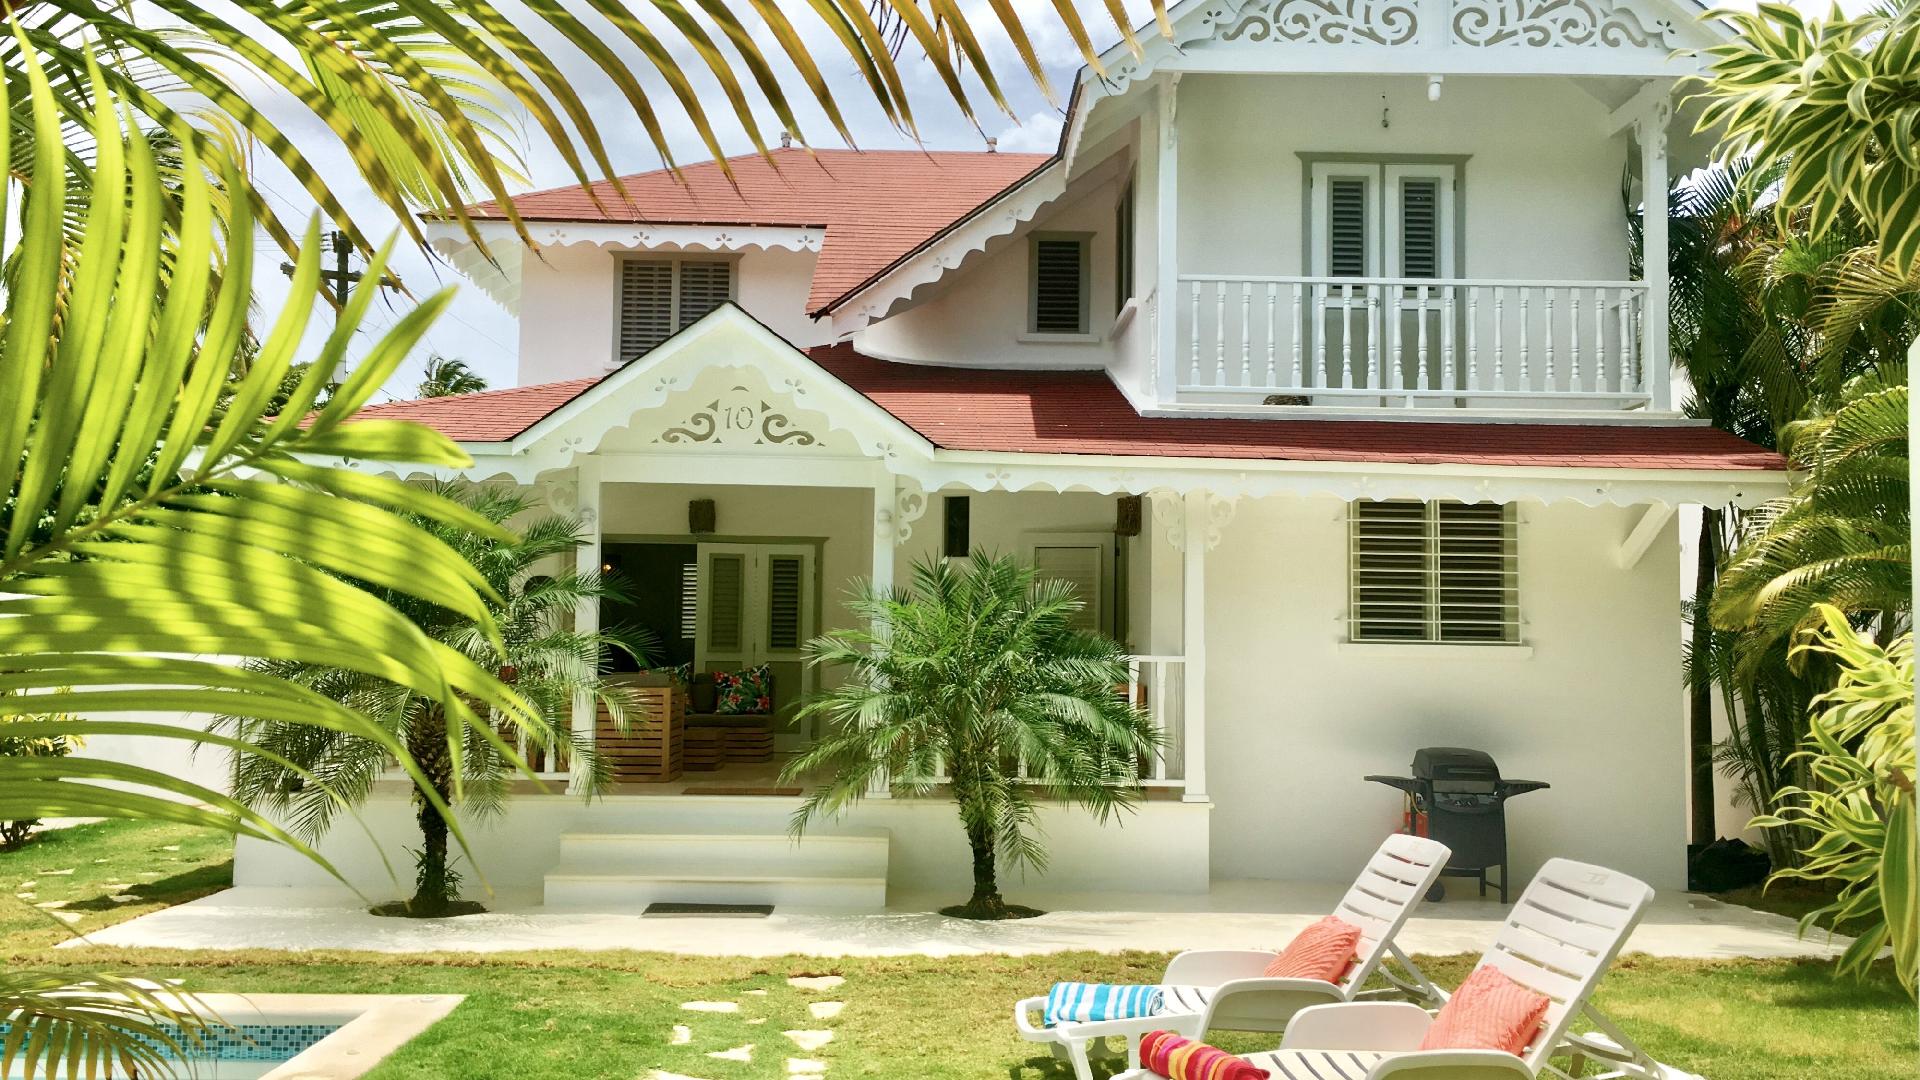 Ferienhaus mit Privatpool für 8 Personen ca.  Ferienhaus in Mittelamerika und Karibik